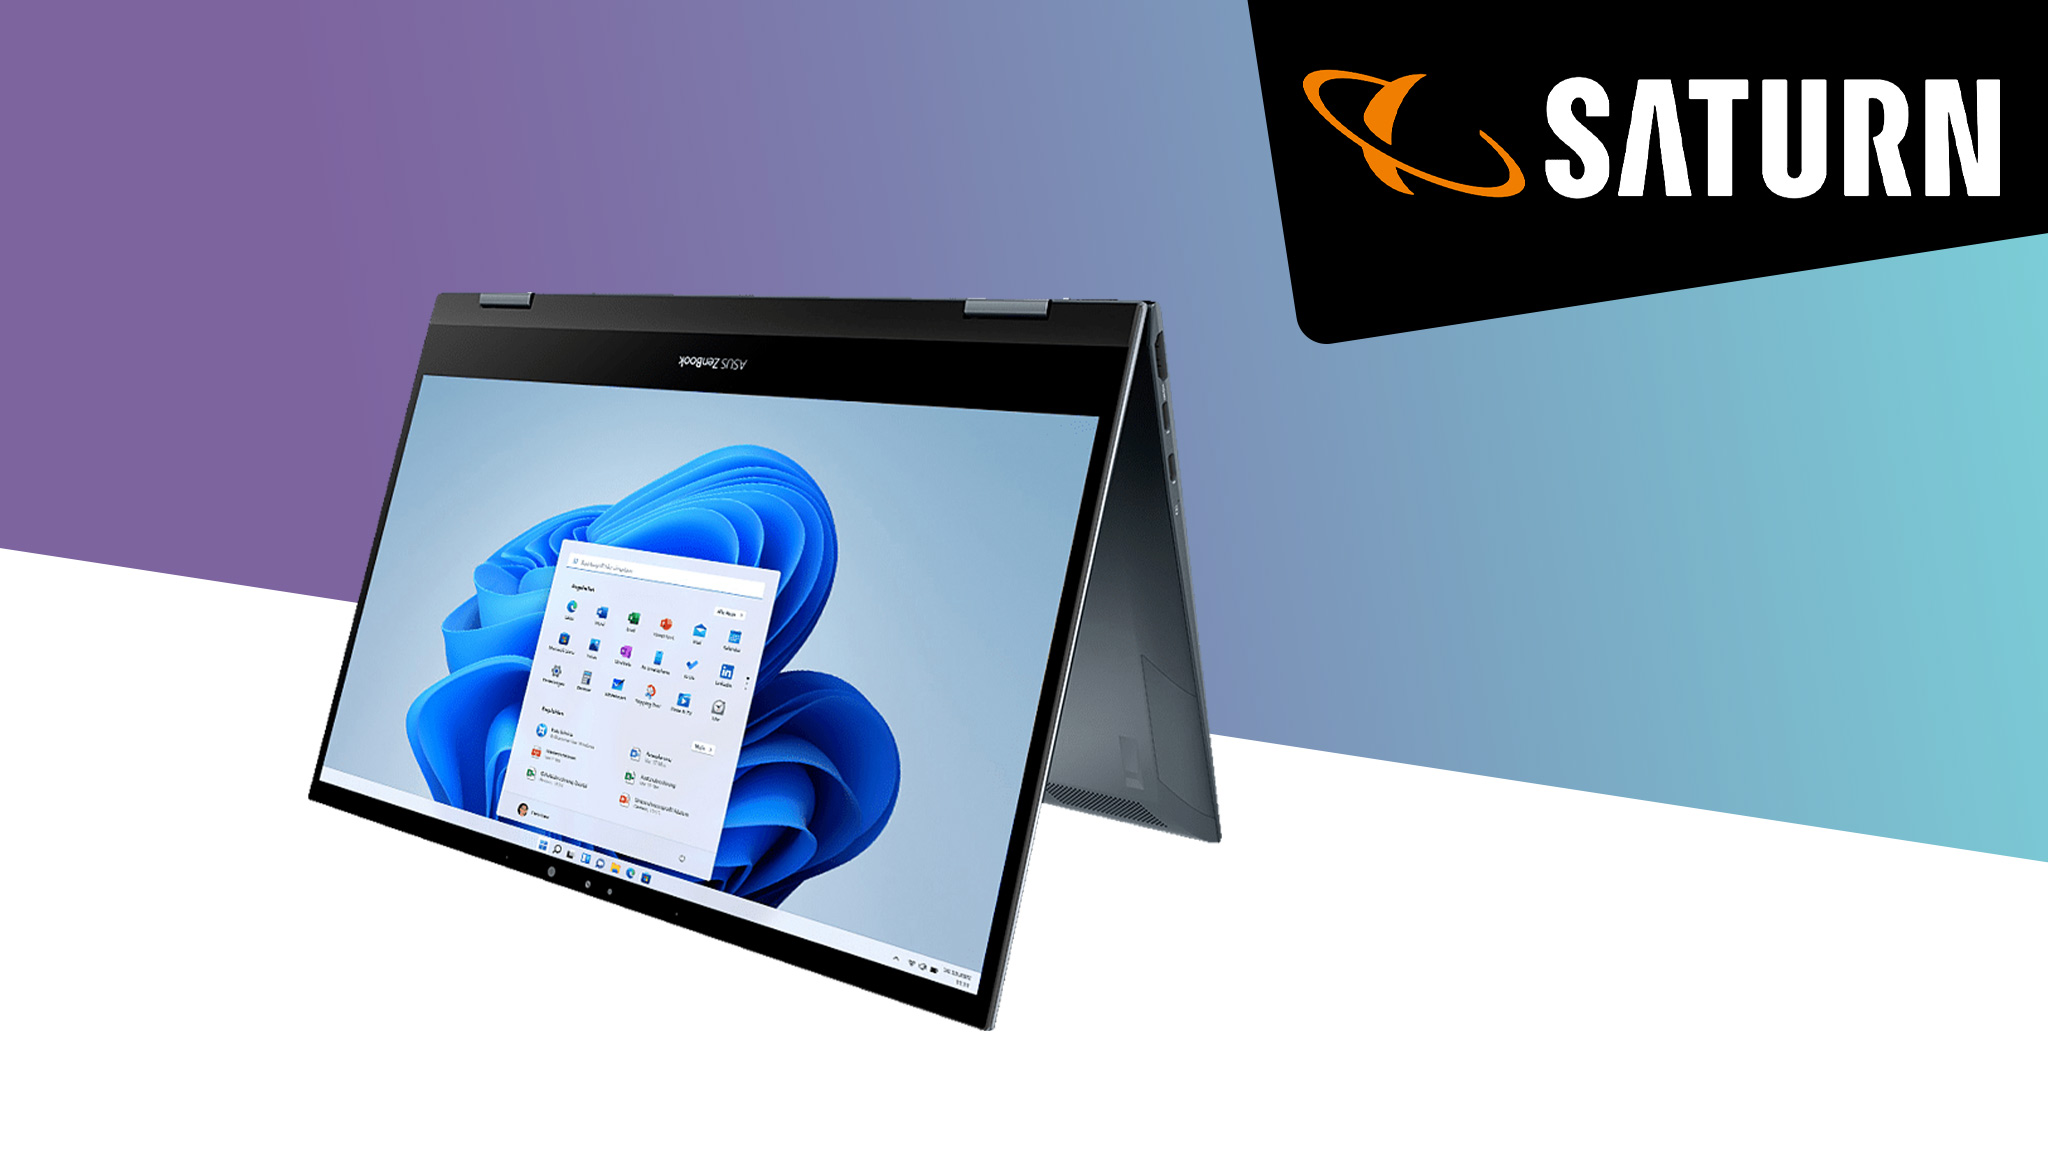 Asus ZenBook Flip 13 UX363: Starke 200 Euro günstiger im Saturn-Angebot